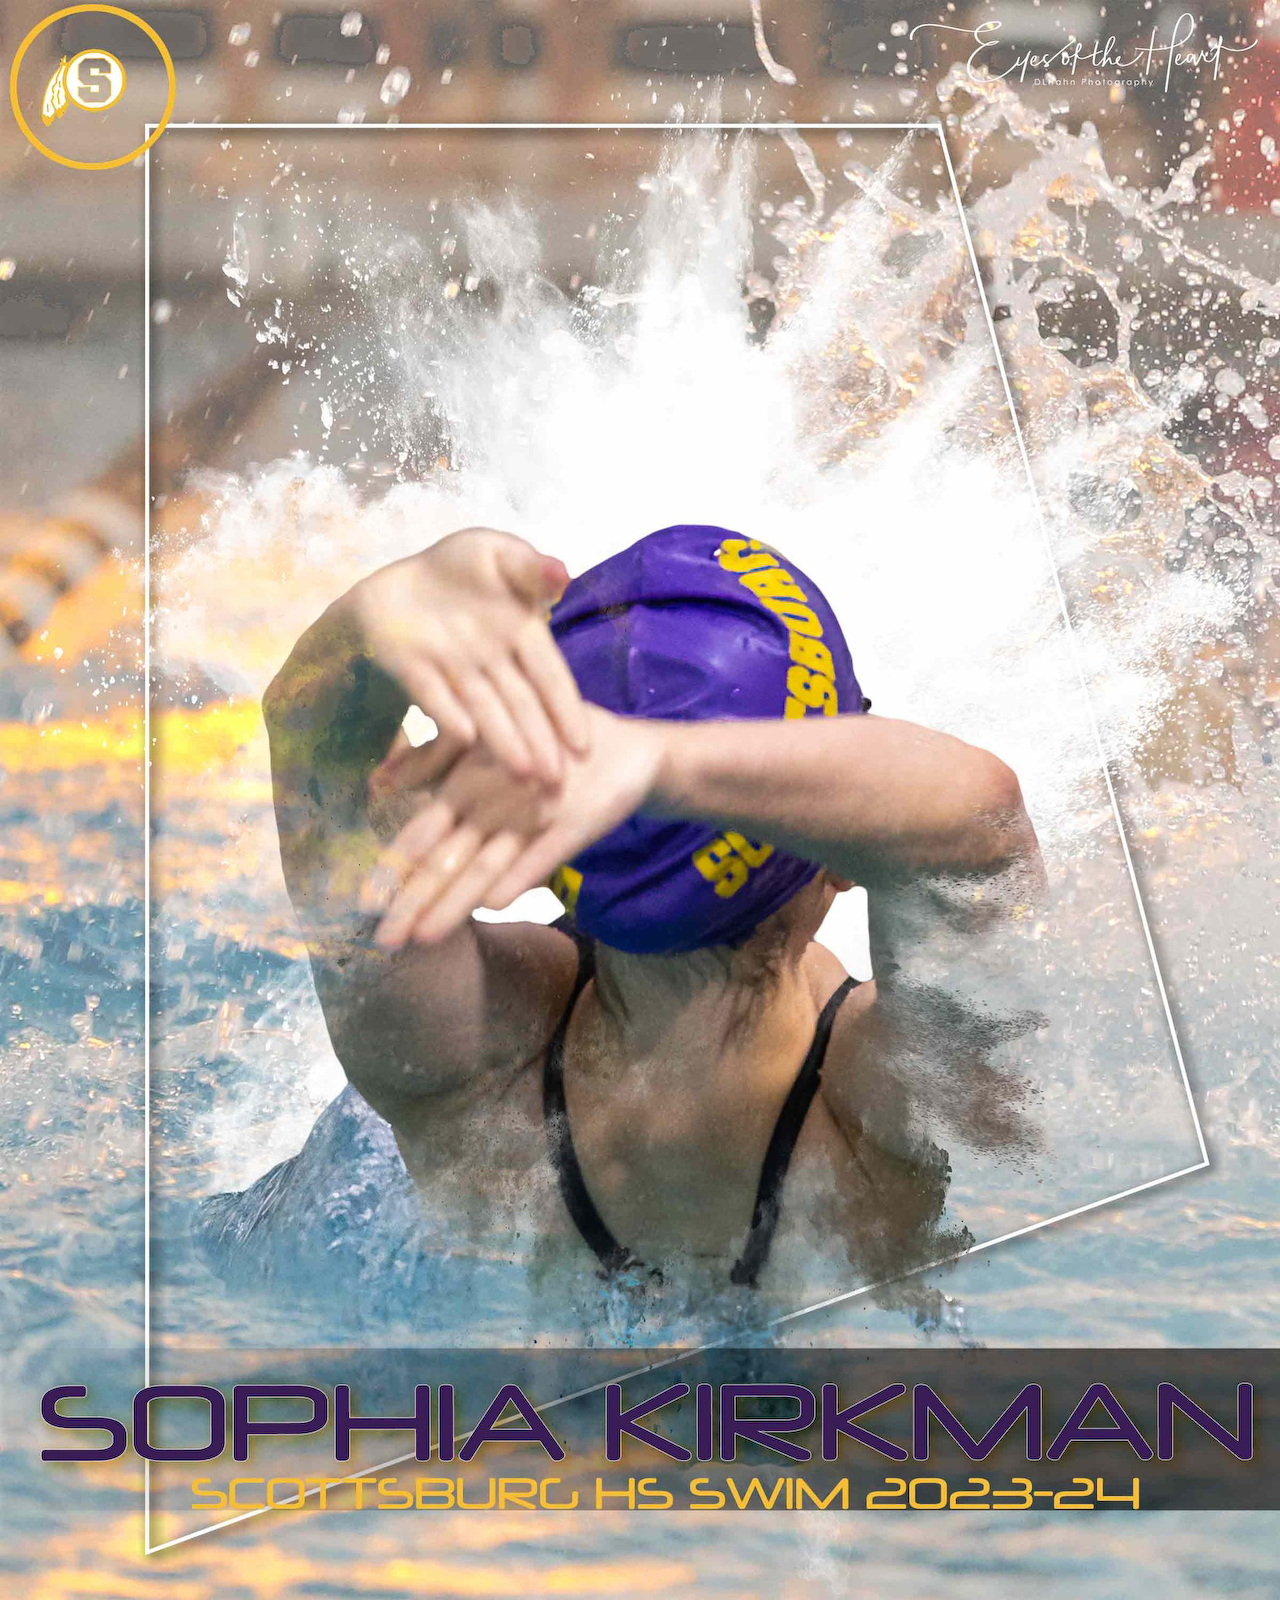 Scottsburg Swimming 2023-24 gallery cover photo